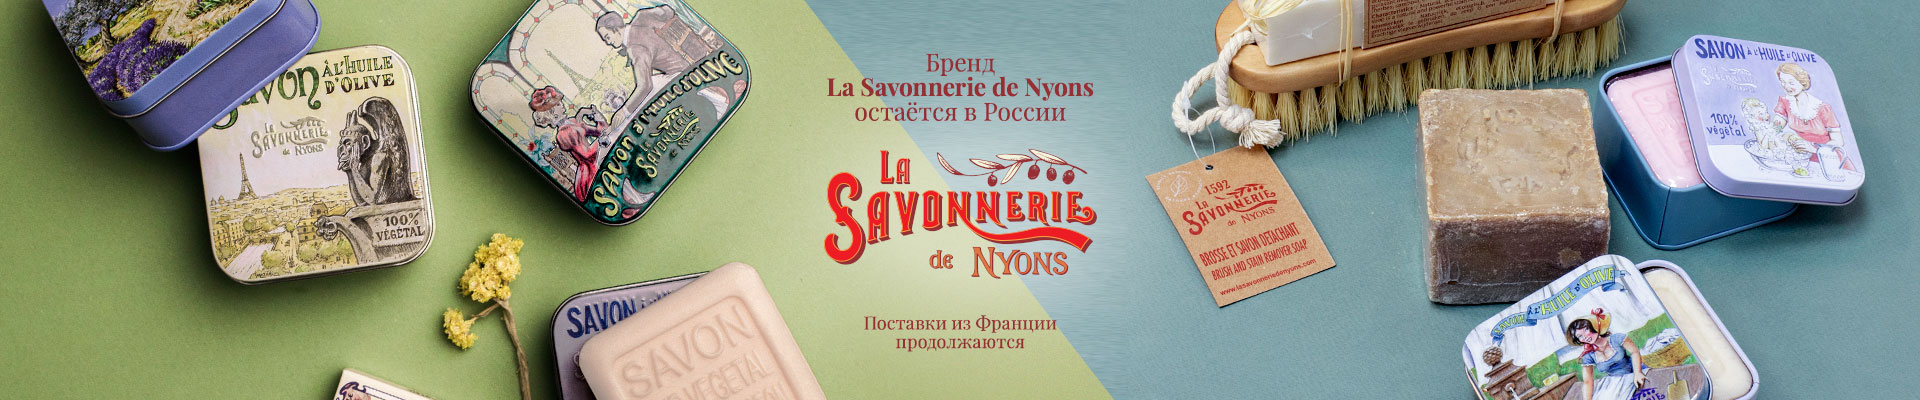 мы в России La Savonnerie de Nyons vivacite.ru